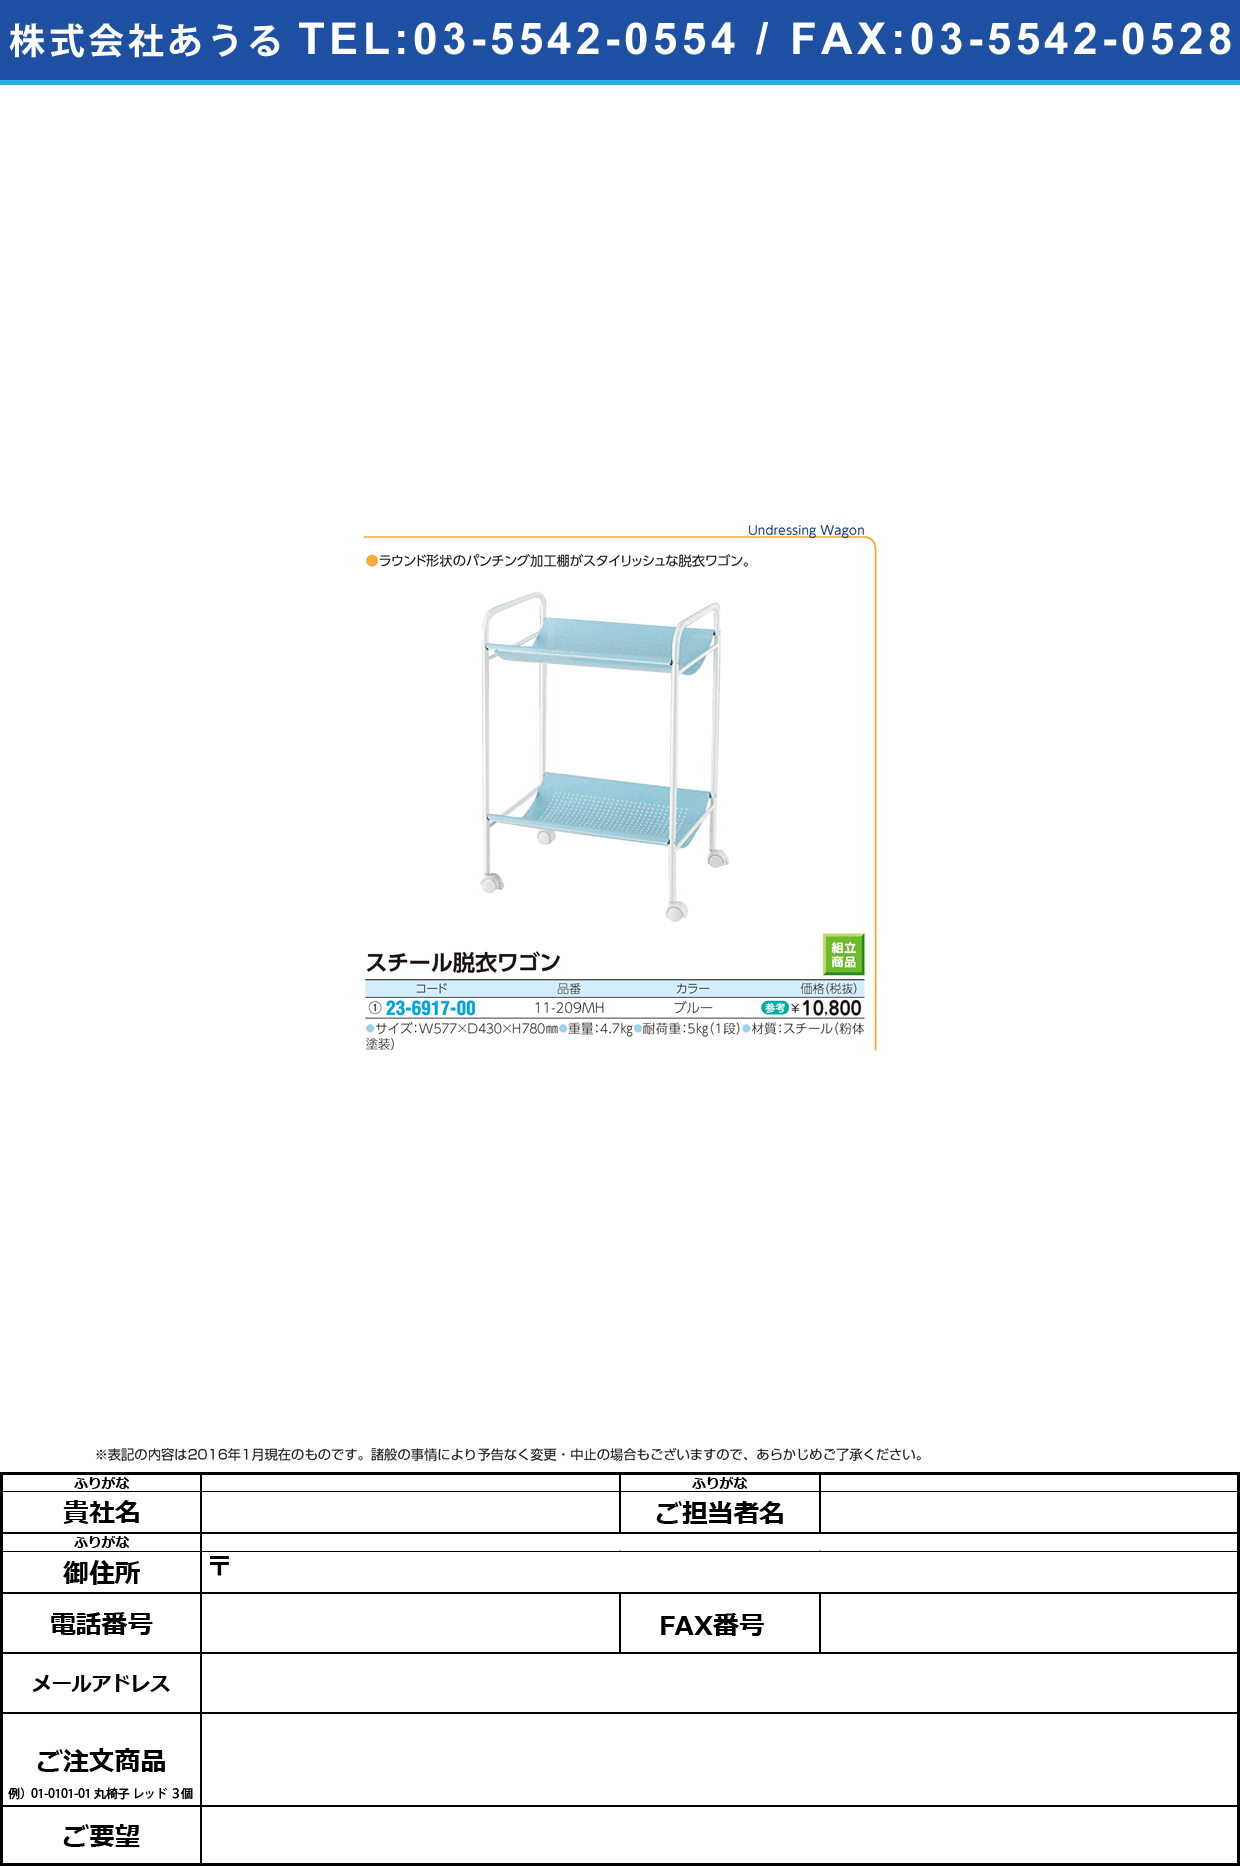 スチール脱衣ワゴン    ｽﾁｰﾙﾀﾞﾂｲﾜｺﾞﾝ 11-209MH(ﾌﾞﾙｰ)【1台単位】(23-6917-00)